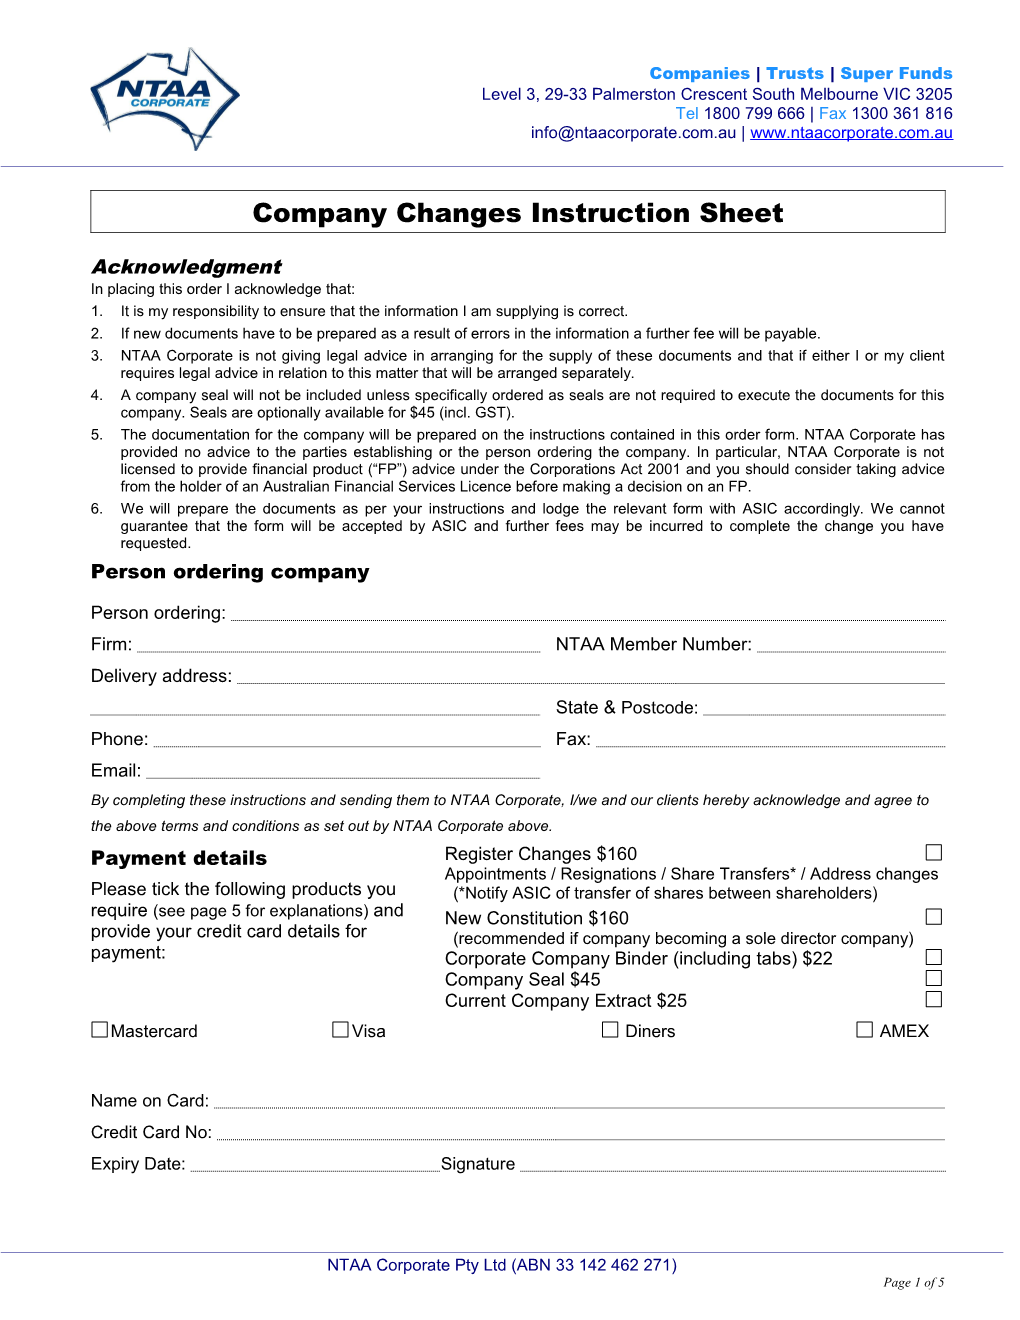 New Proprietary Company Instruction Sheet